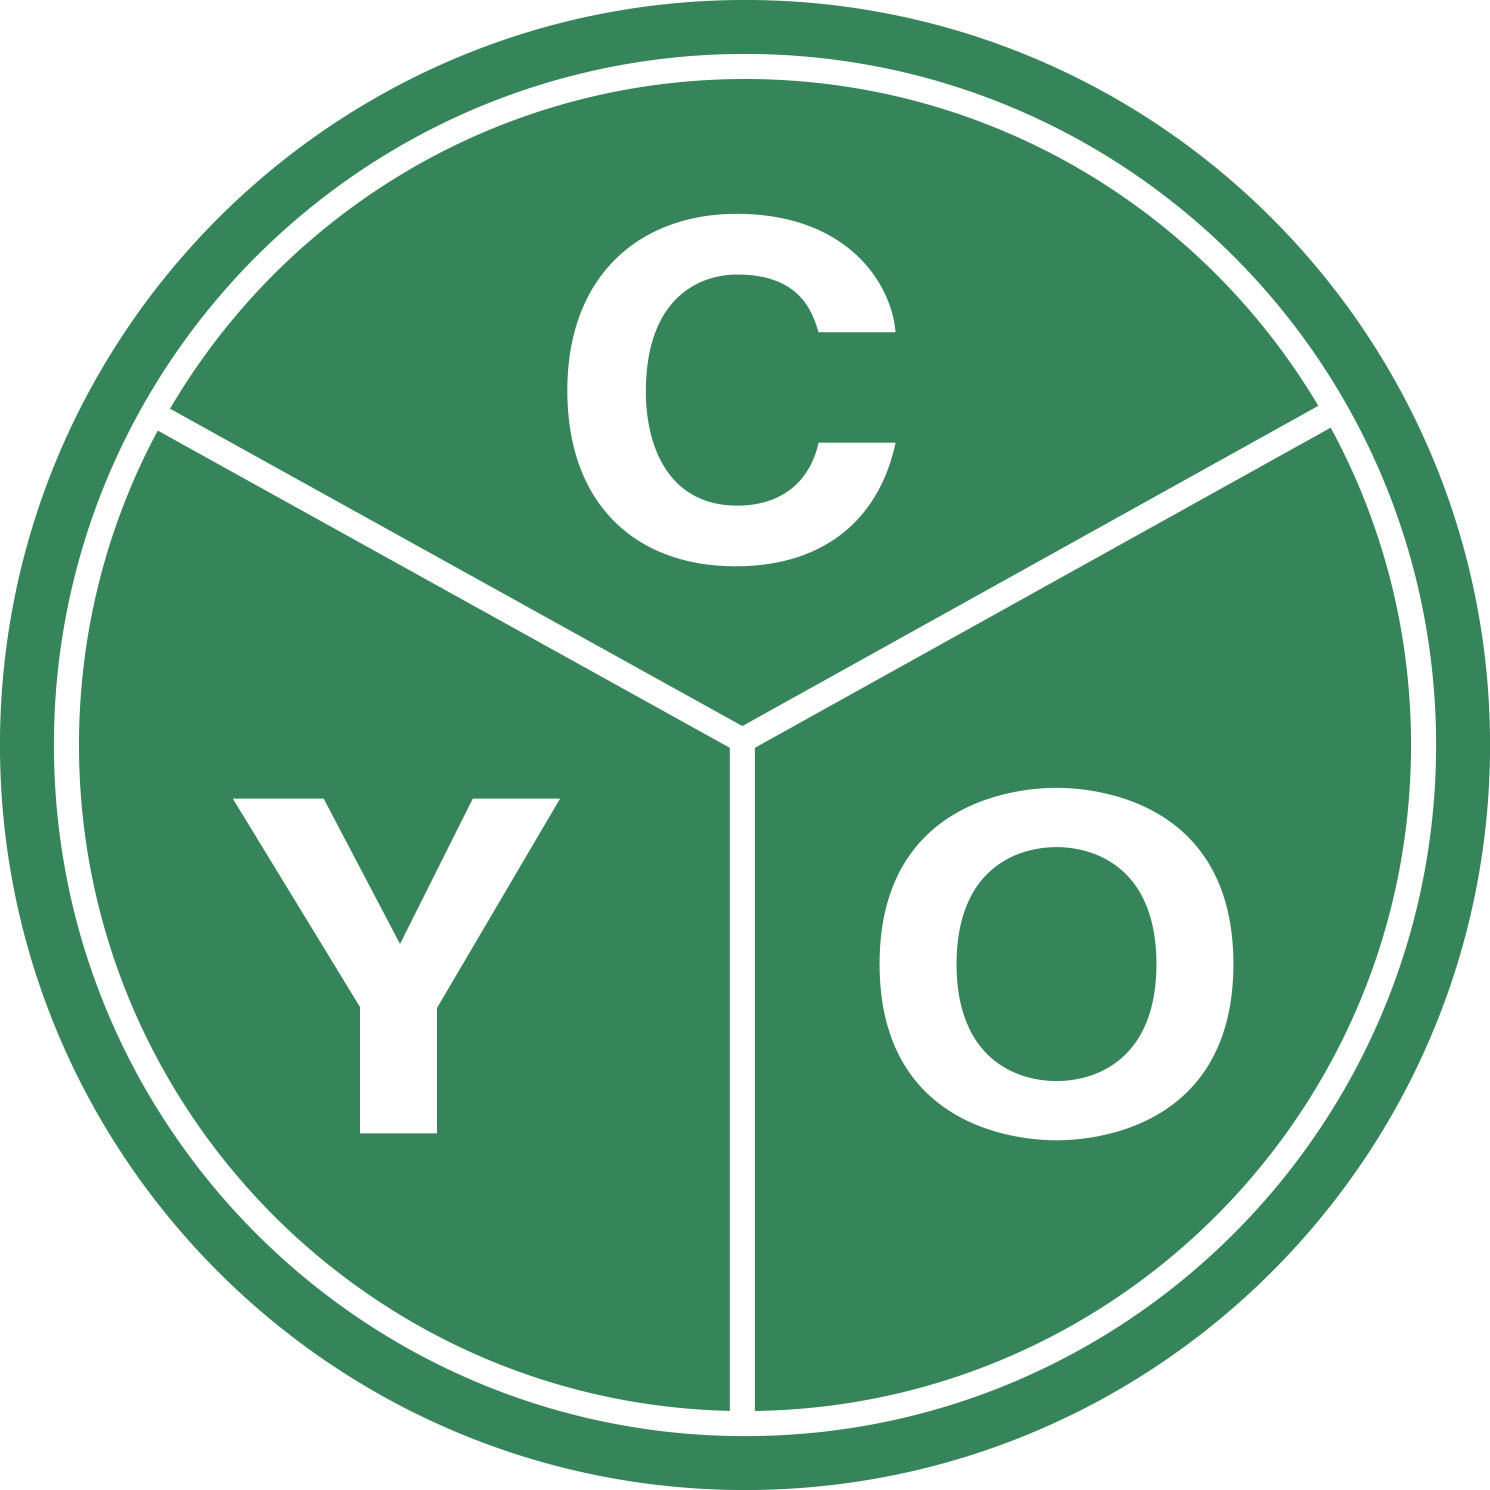 Catholic Youth Organization Logo